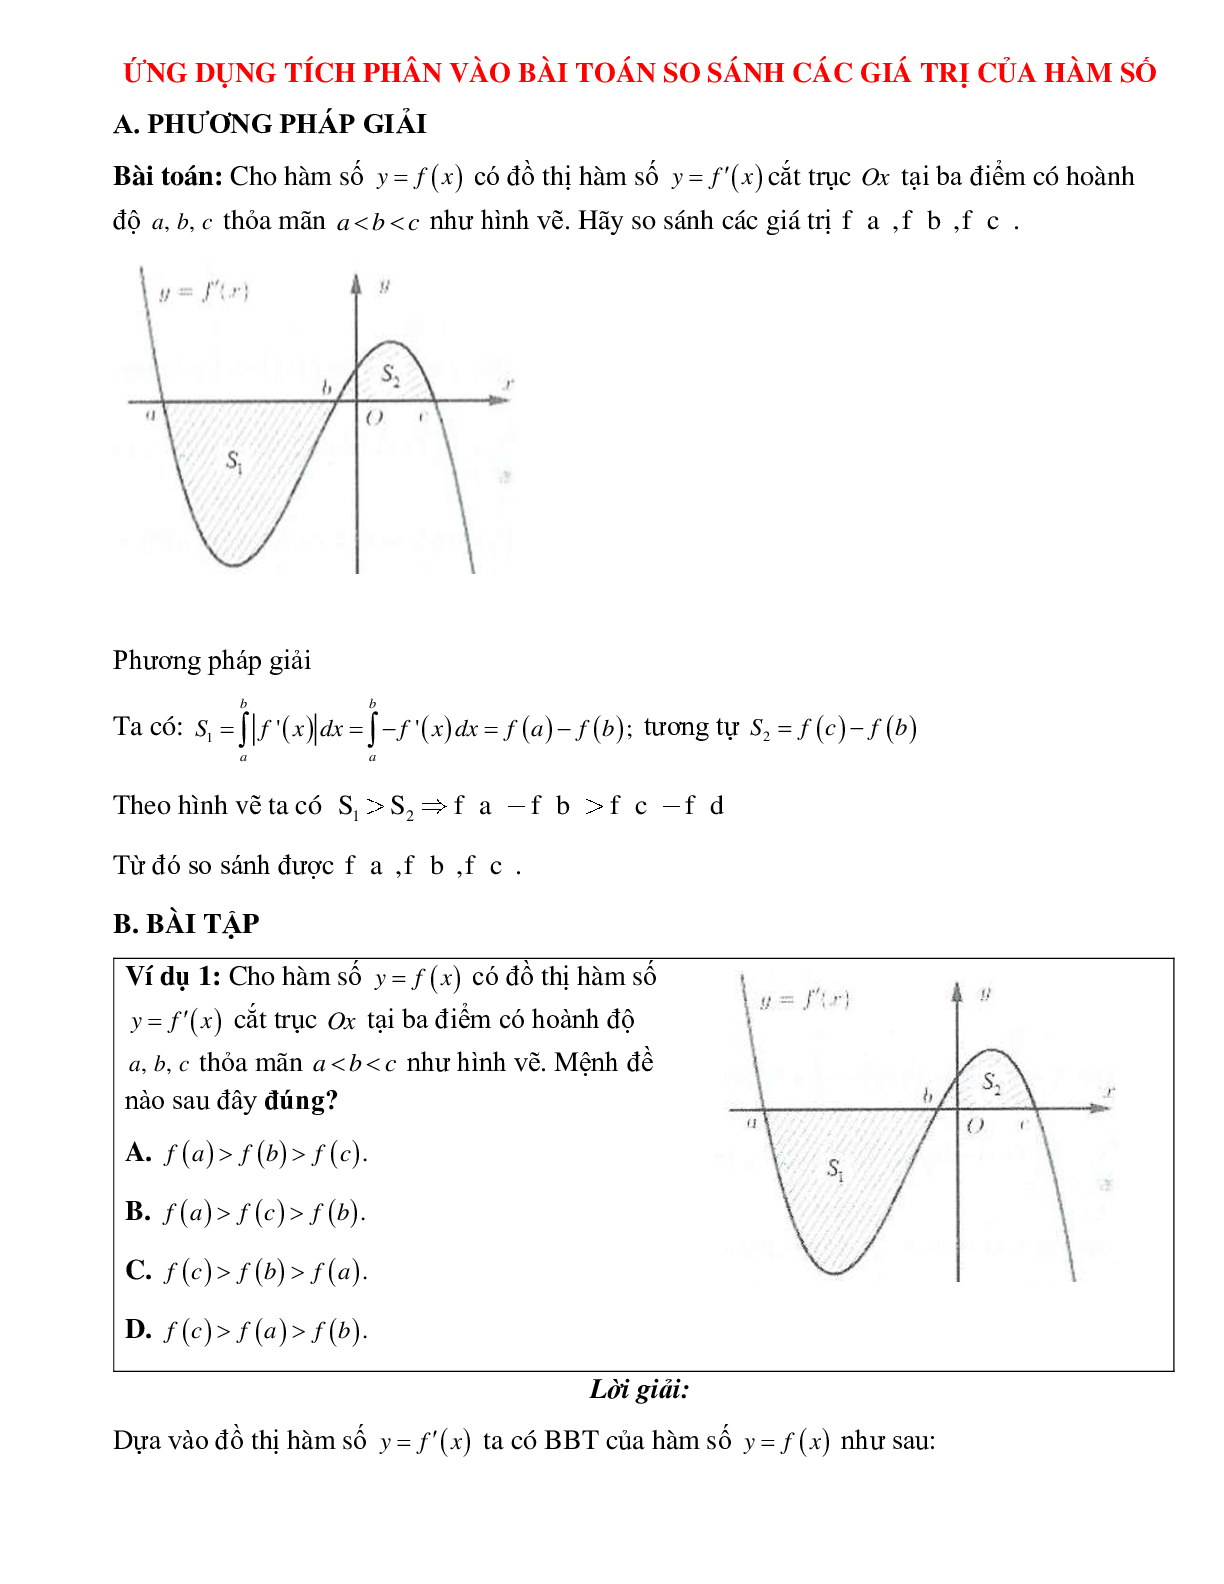 Ứng dụng tích phân vào bài toán so sánh các giá trị của hàm số Toán 12 (trang 1)